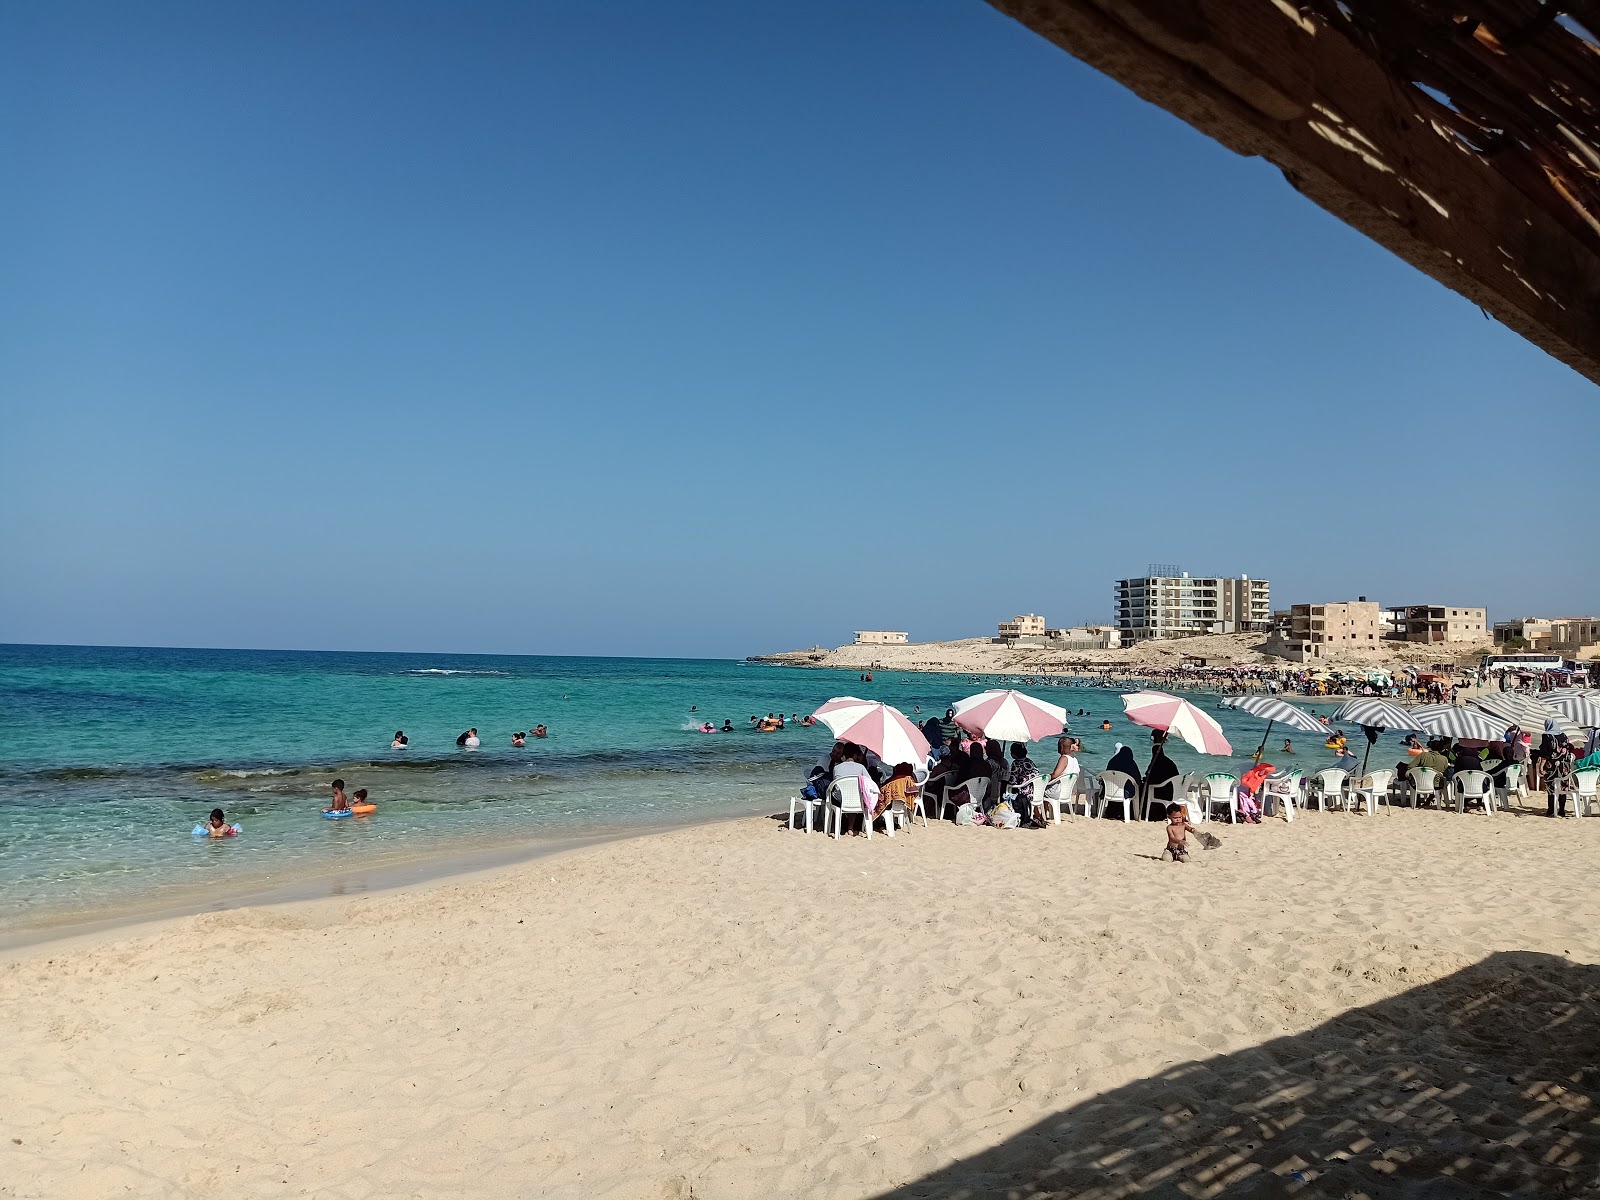 Fotografie cu Minaa Alhasheesh beach - locul popular printre cunoscătorii de relaxare